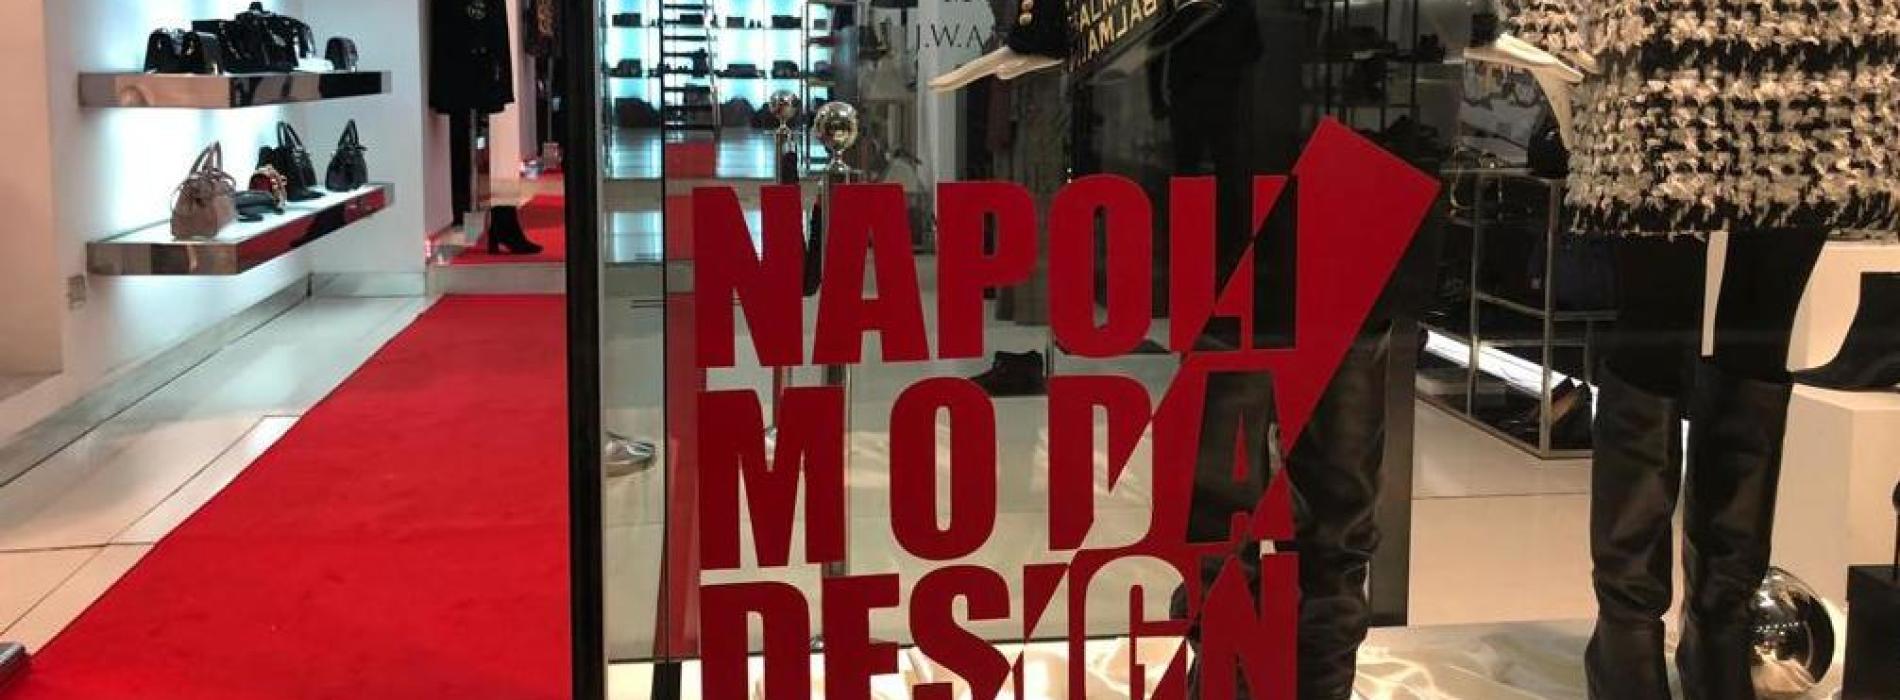 AperiModaDesign a Caserta, architetti in vetrina a via Mazzini